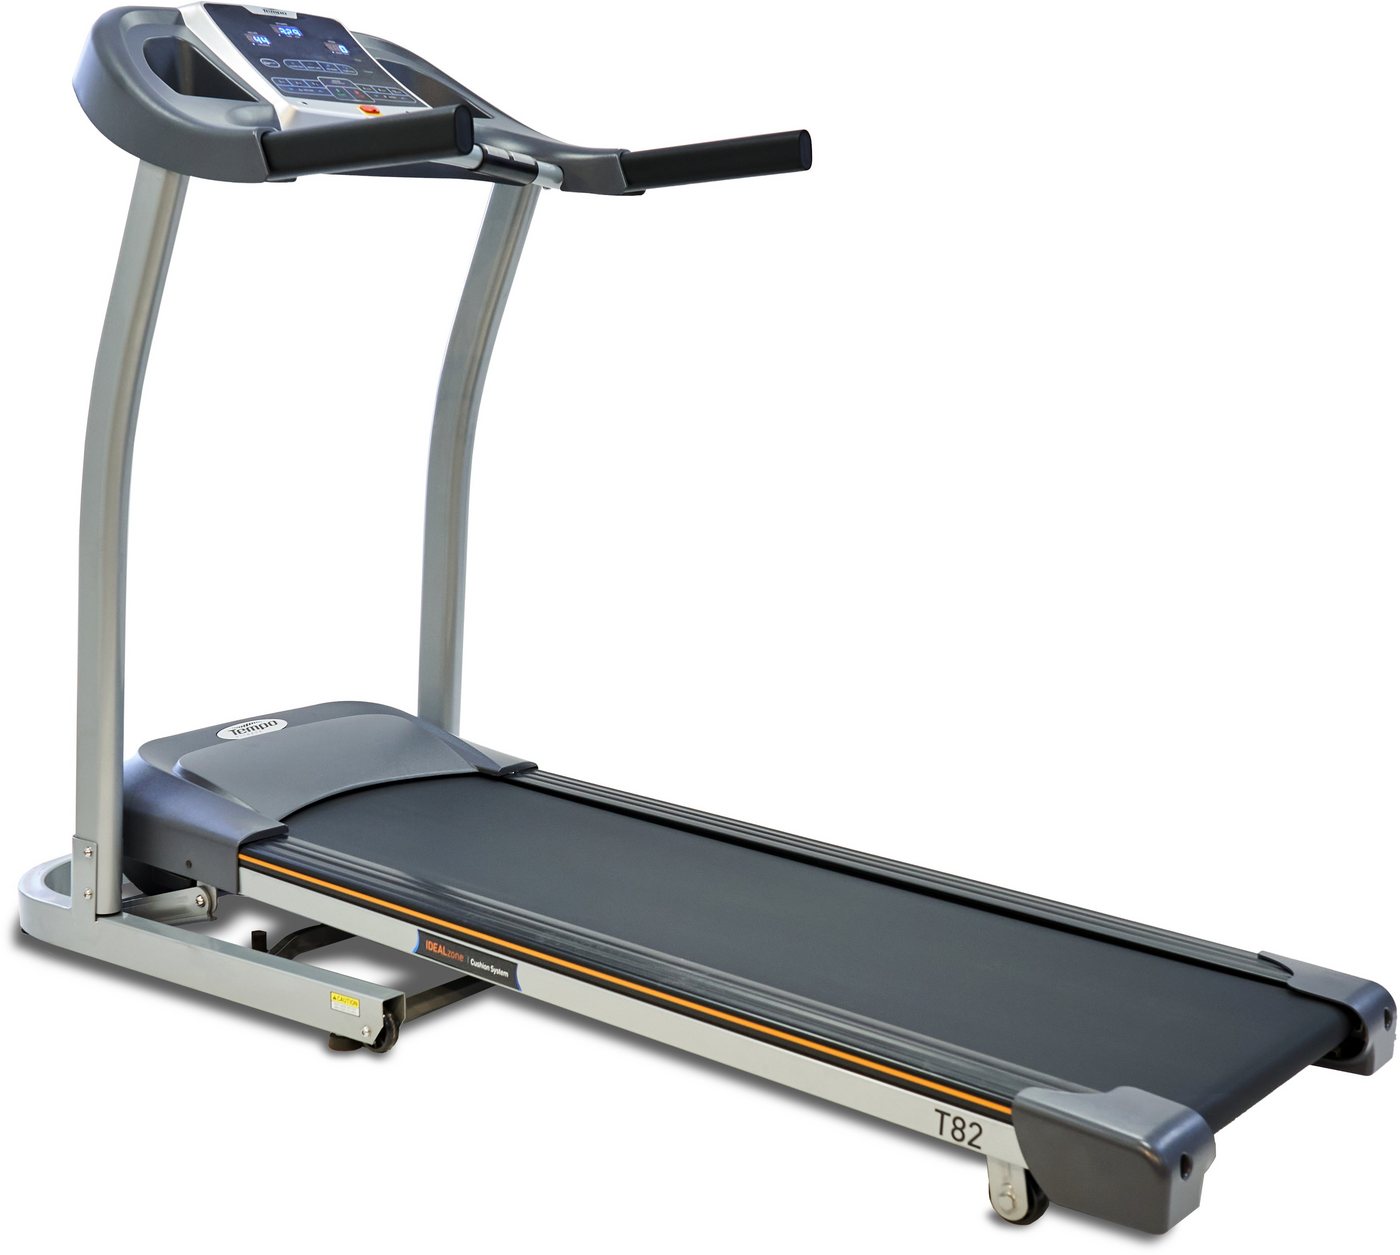 Horizon Fitness Laufband T82, Energiesparmodus, Audio In/Out Buchsen, BMI Test von Horizon Fitness